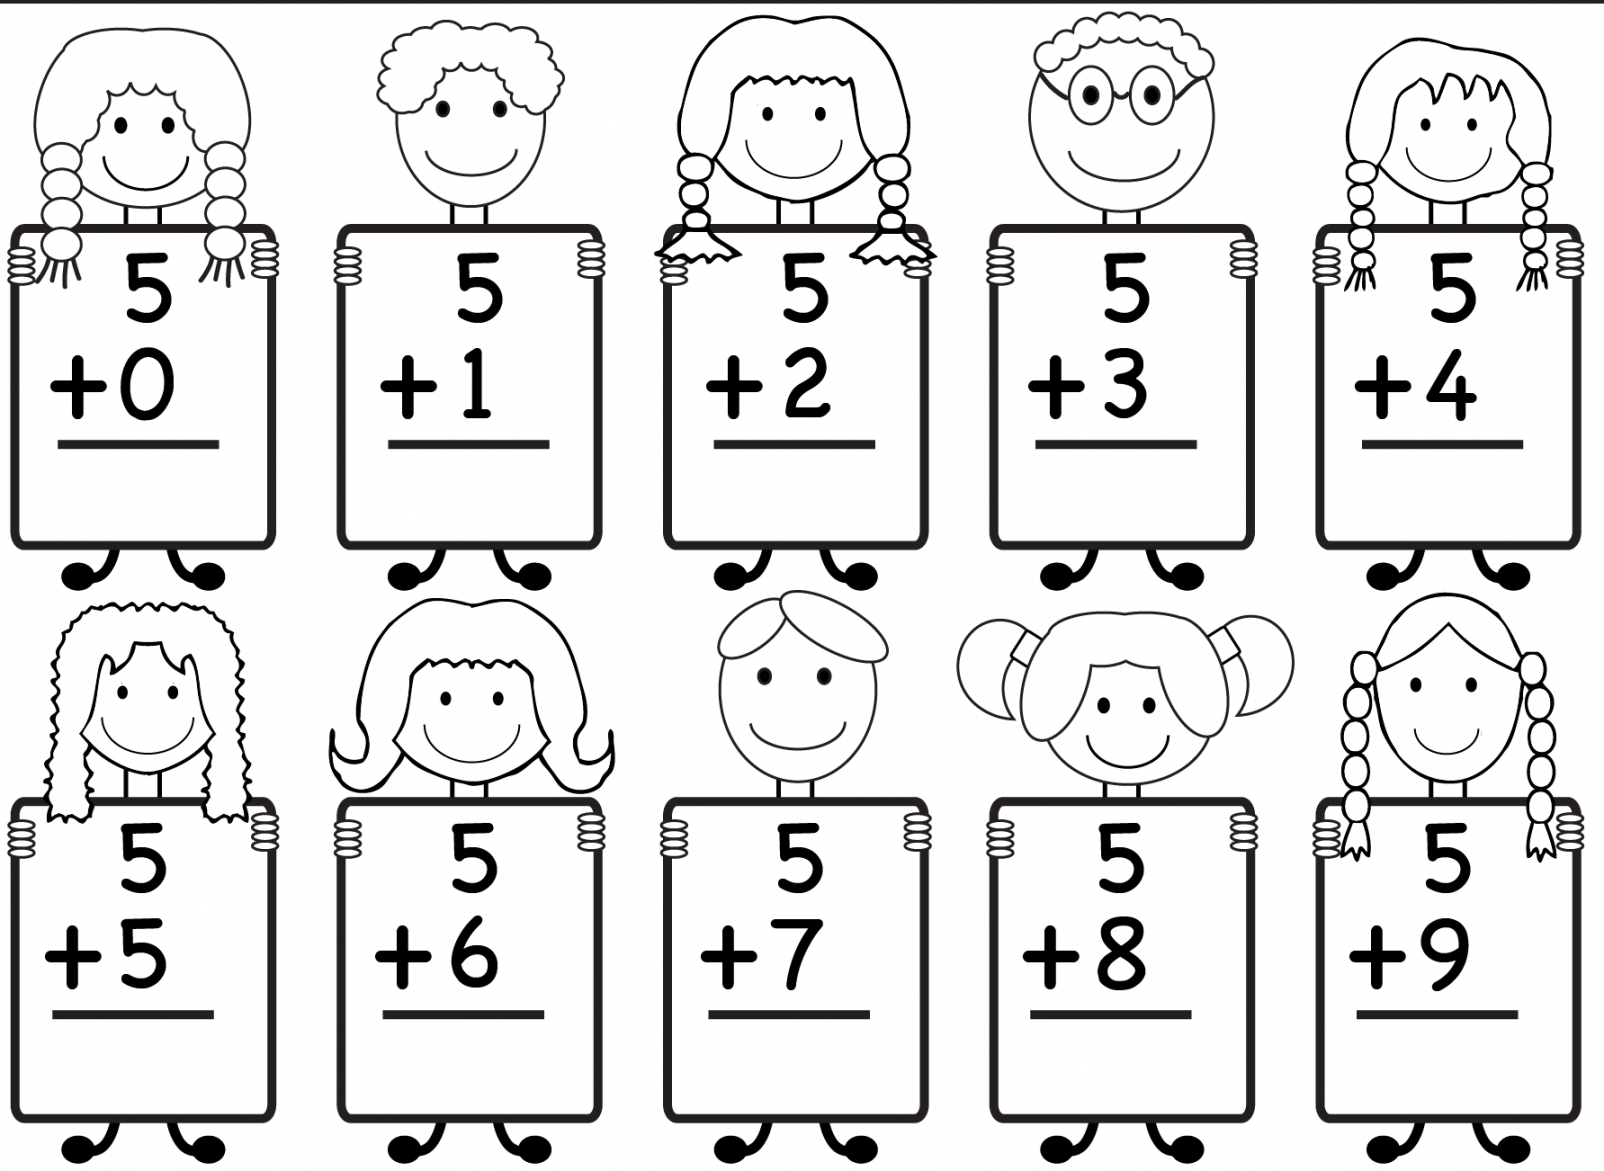 Free Printable Kindergarten Worksheets - Printable - Free Printable Kindergarten Math Worksheets